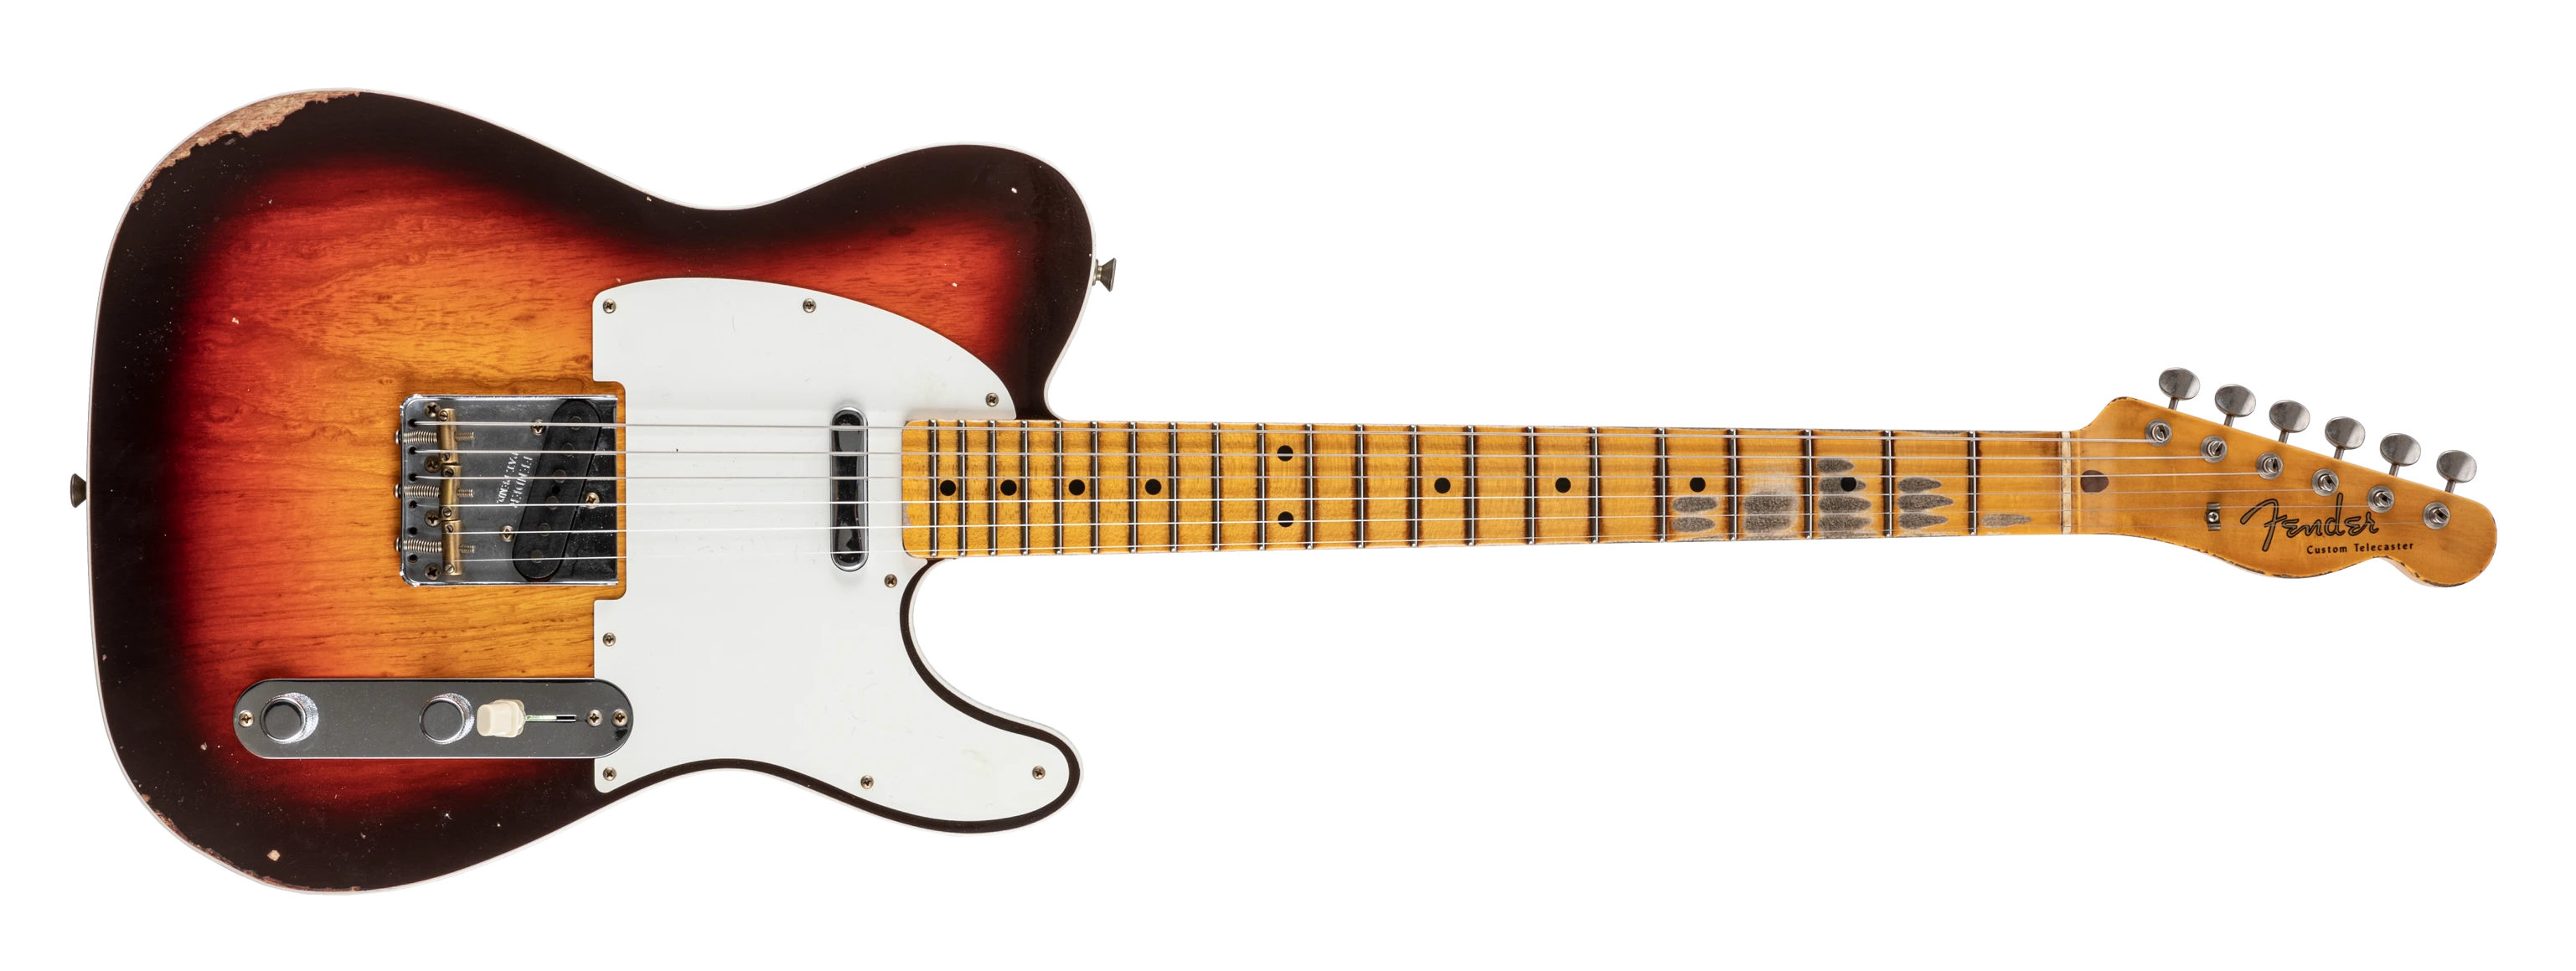 Fender Tele 59 Custom Relic wide-fade chocolate 3 cs sunburst 